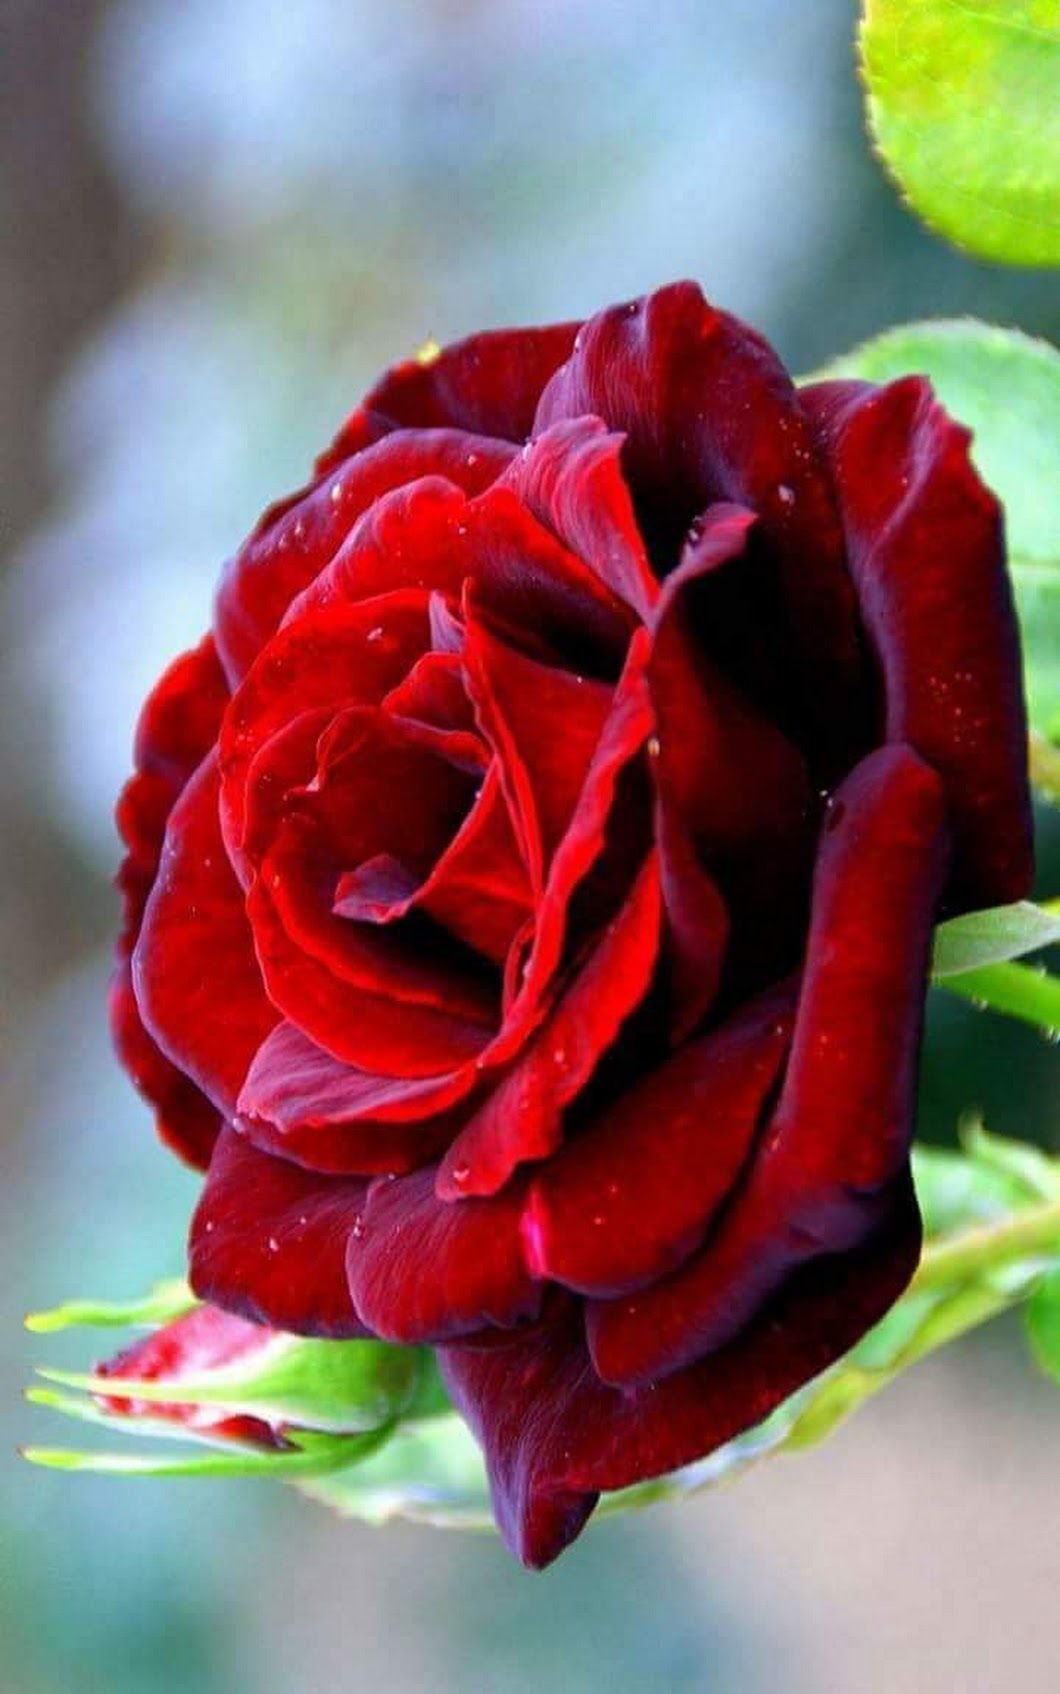 Красивое фото красной розы. Рэд Рэд Роуз.